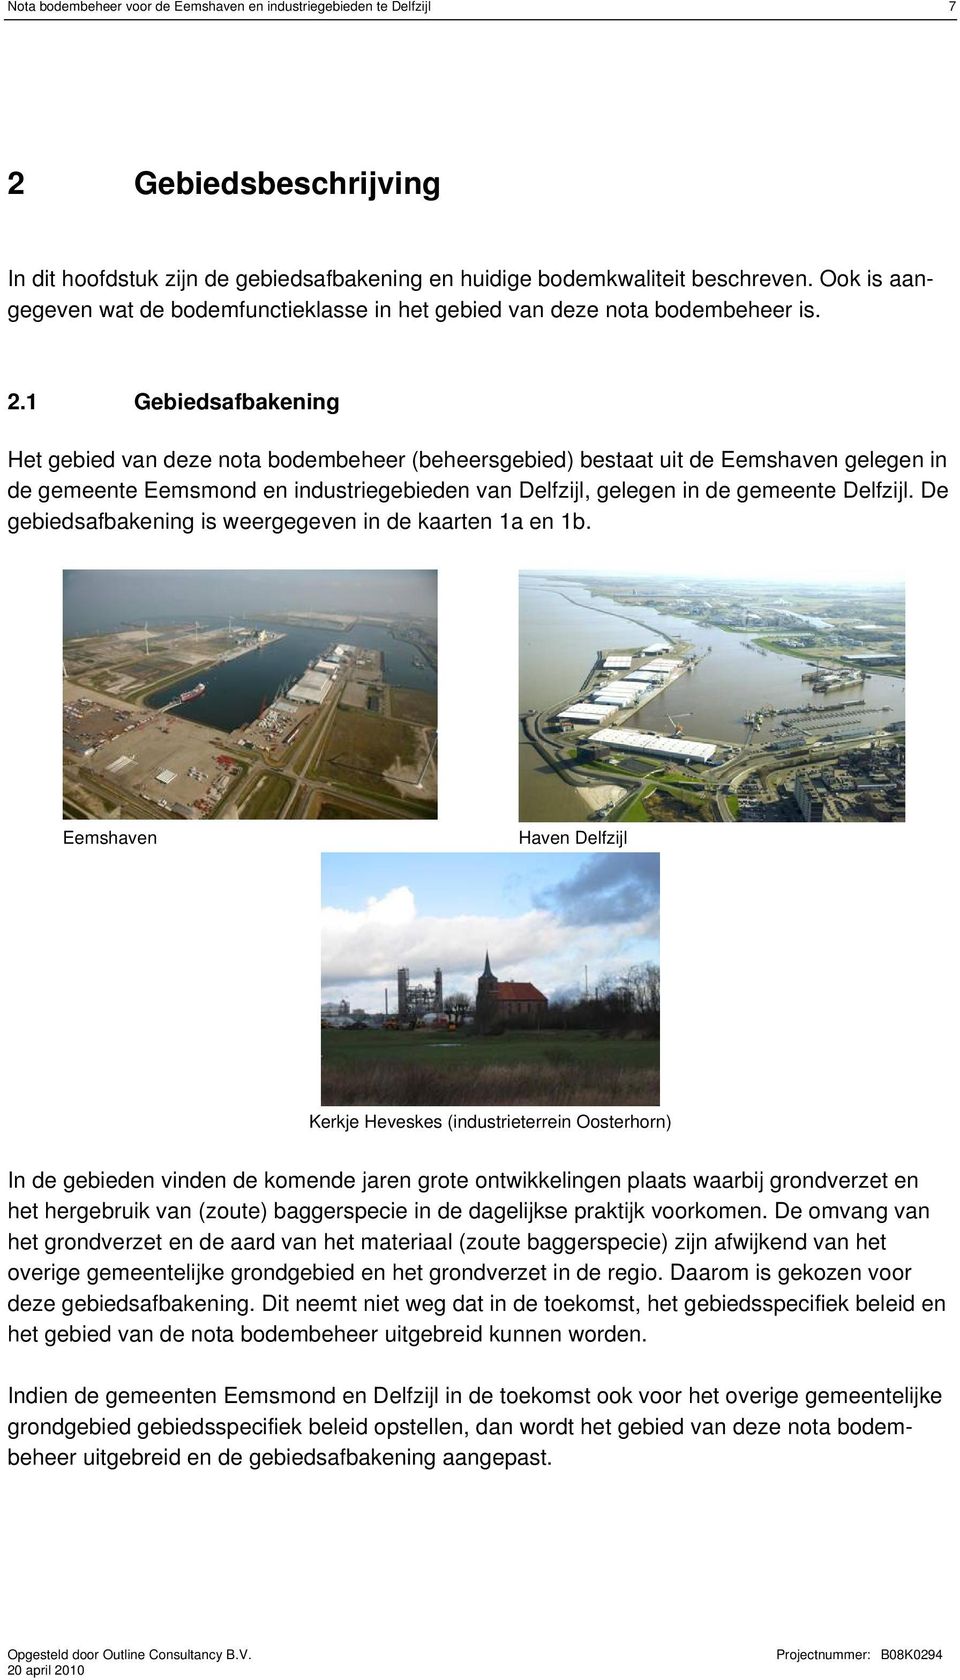 1 Gebiedsafbakening Het gebied van deze nota bodembeheer (beheersgebied) bestaat uit de Eemshaven gelegen in de gemeente Eemsmond en industriegebieden van Delfzijl, gelegen in de gemeente Delfzijl.